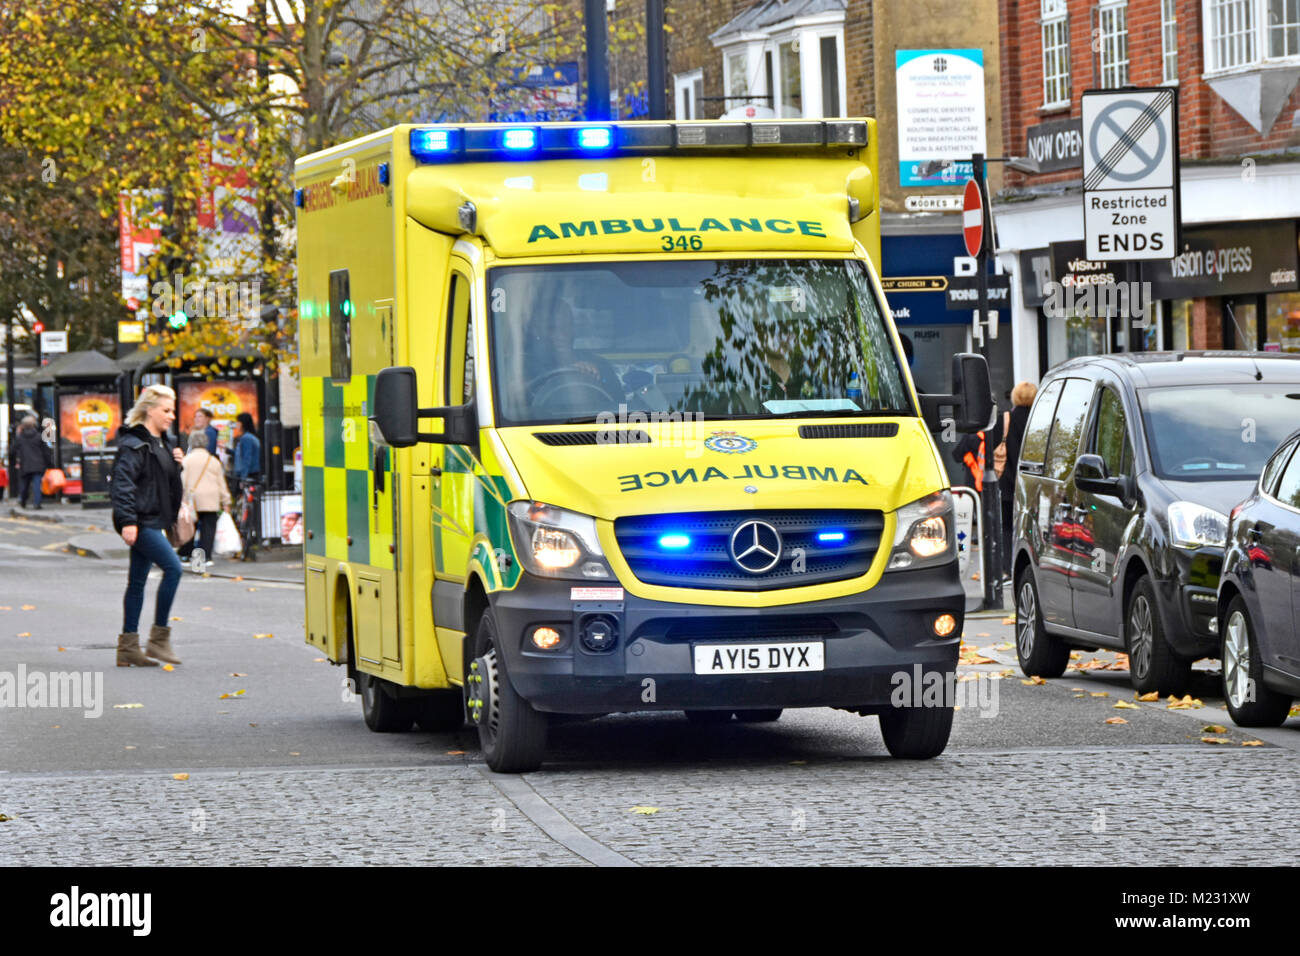 Est de l'Angleterre lumière bleue urgence Ambulance Service NHS véhicule et équipage sur 999 voyage piétons traversant High Street Brentwood Essex Angleterre Royaume-Uni Banque D'Images